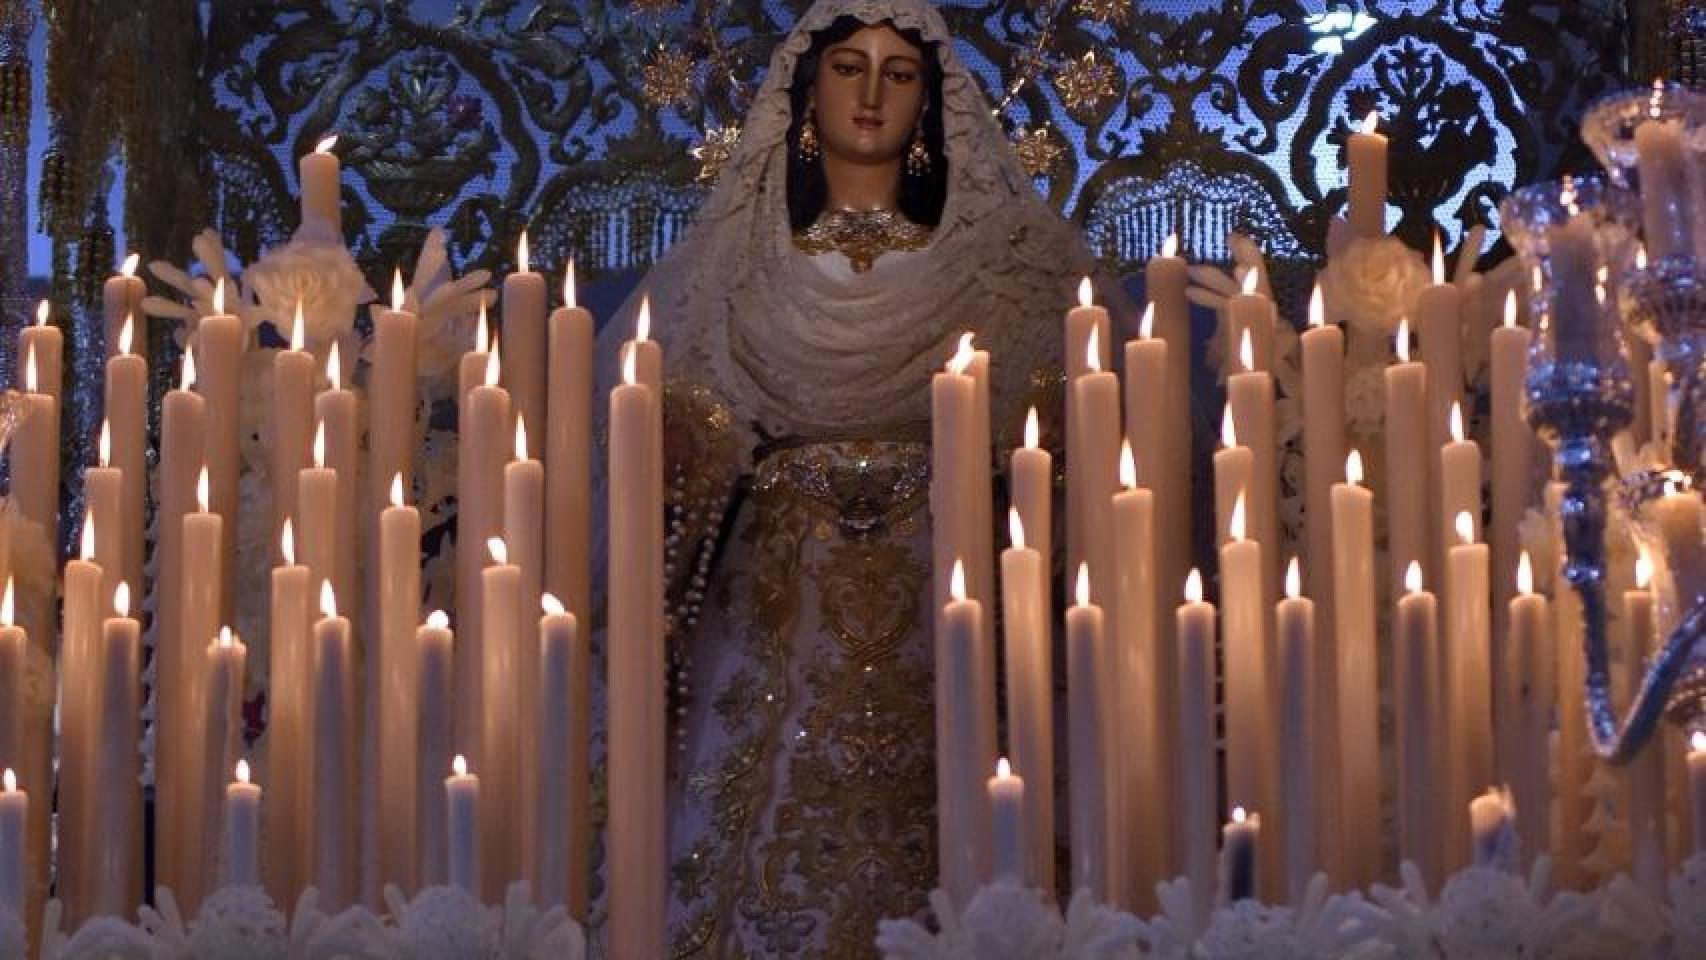 La Virgen del Rocío y Málaga – Cofradía del Rocío